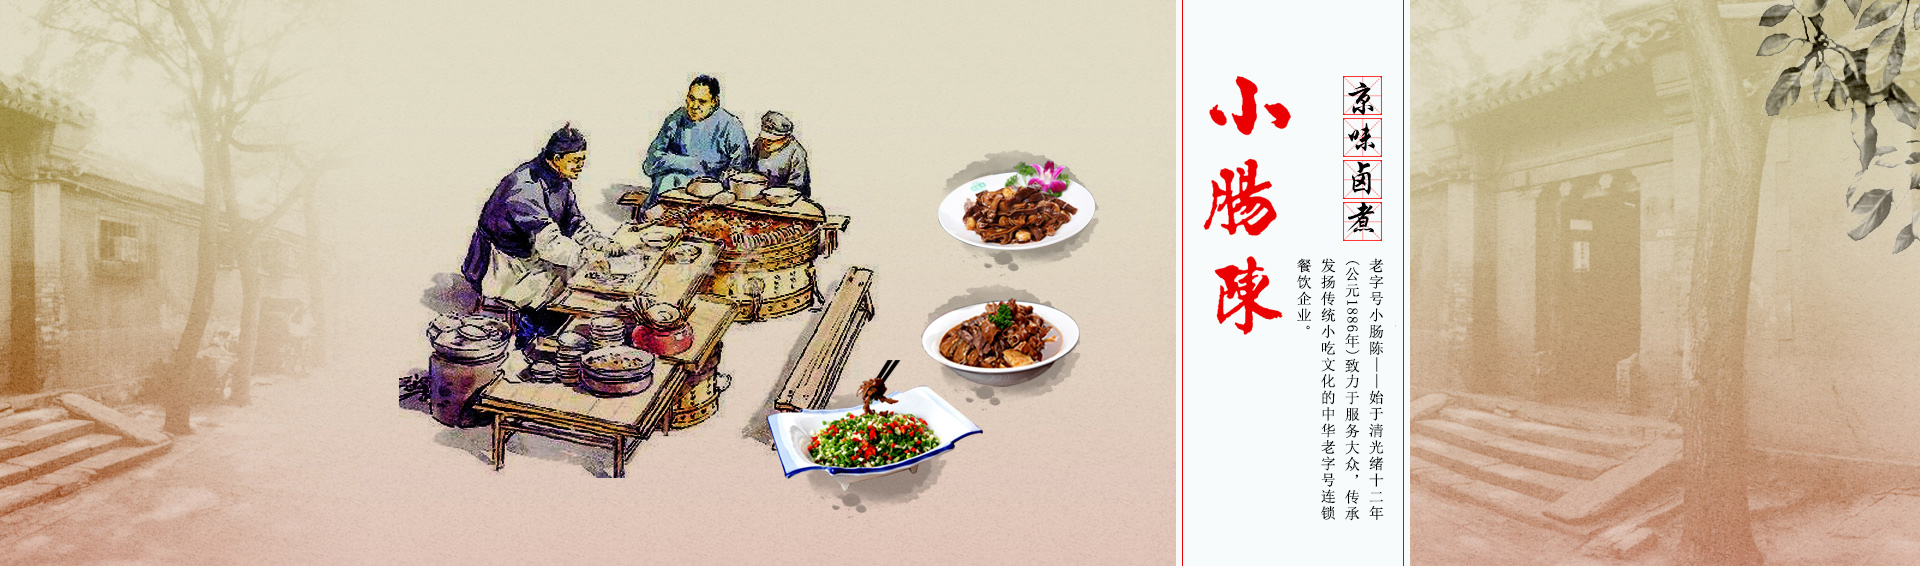 非遗小吃、正宗卤煮、京味美食、京味小吃、特色小吃、北京小吃、卤煮火烧、老字号小吃、中华名小吃